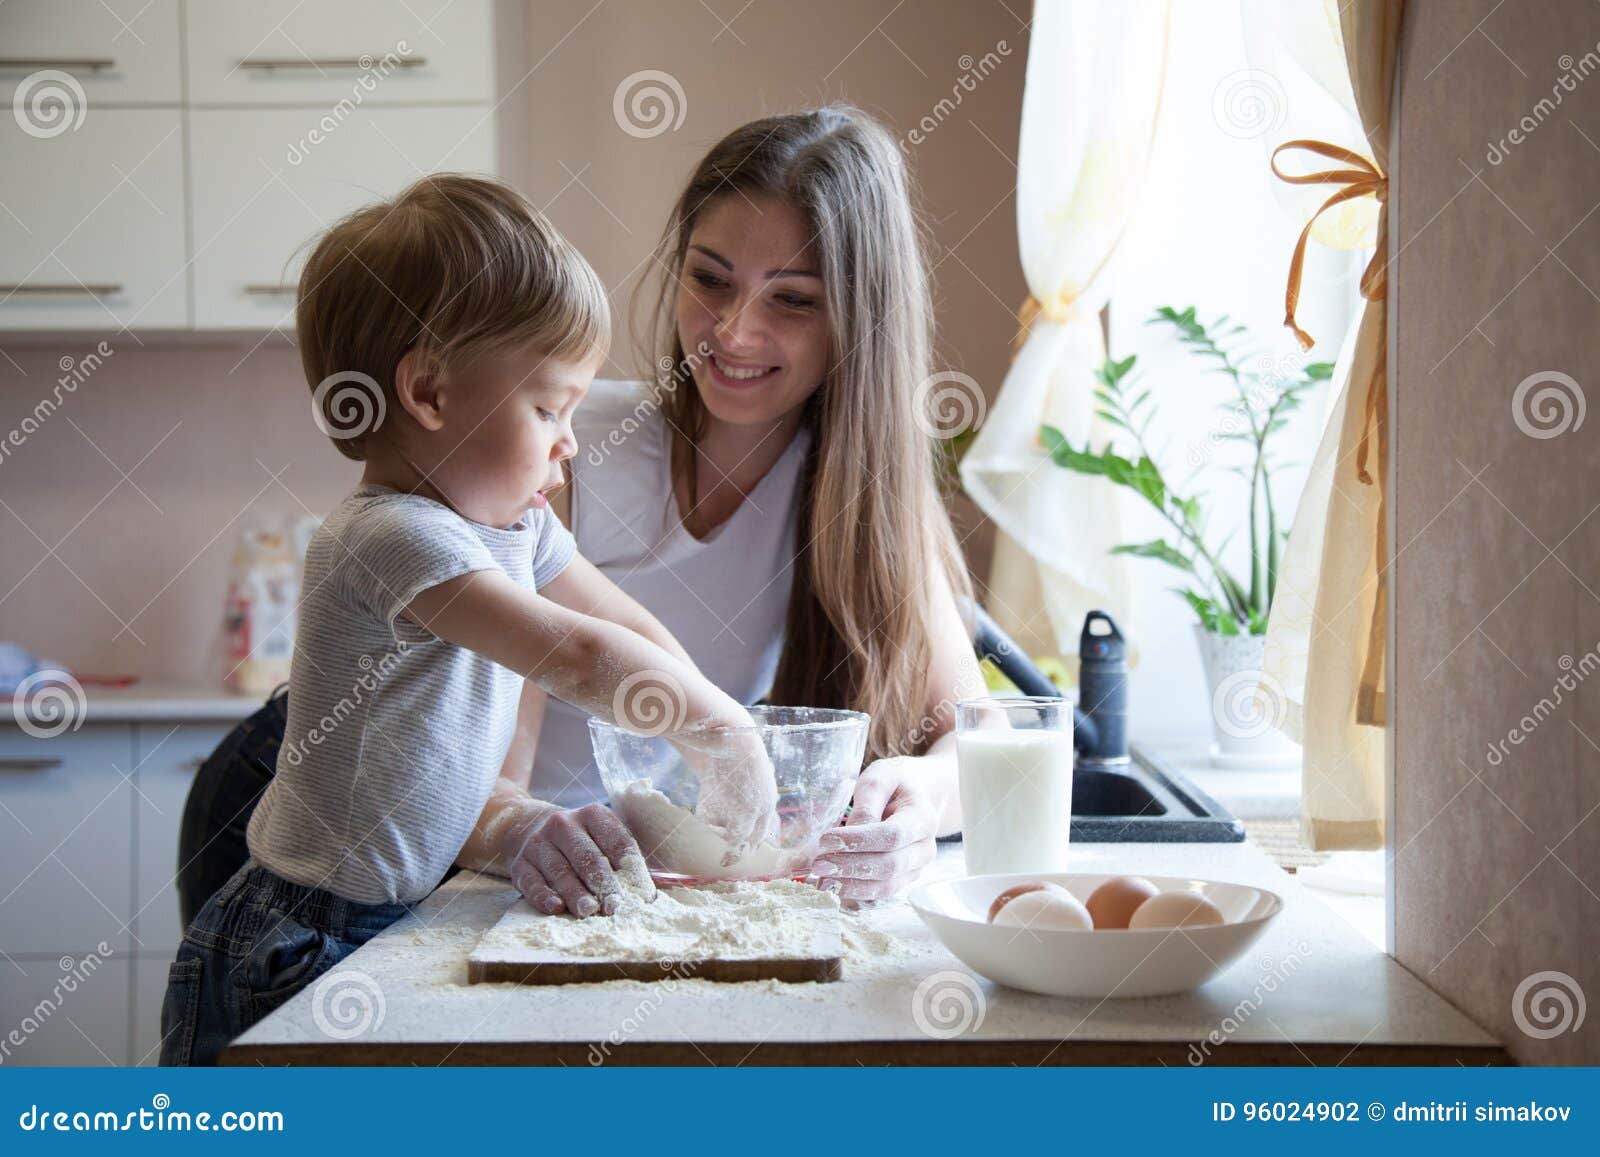 Сын мать на кухне видео. Фотосессия мама с сыном на кухне. Мама готовит торт с сыном. Торт готовка мама. Торт для мамы и сына.